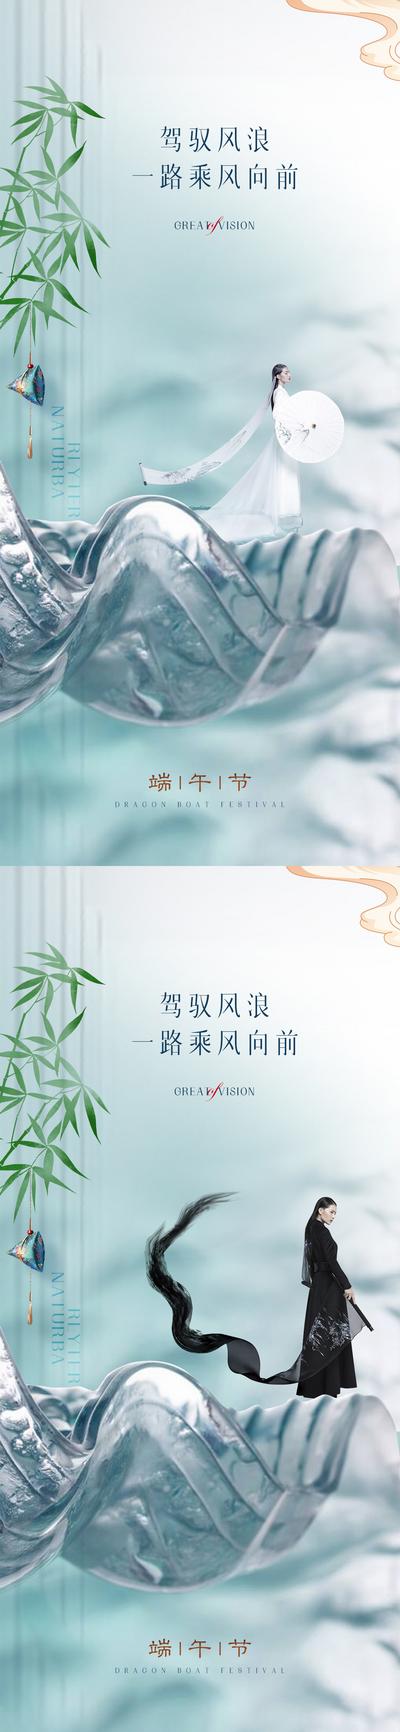 南门网 广告 海报 节气 端午 医美 山水 中式 竹叶 荷包